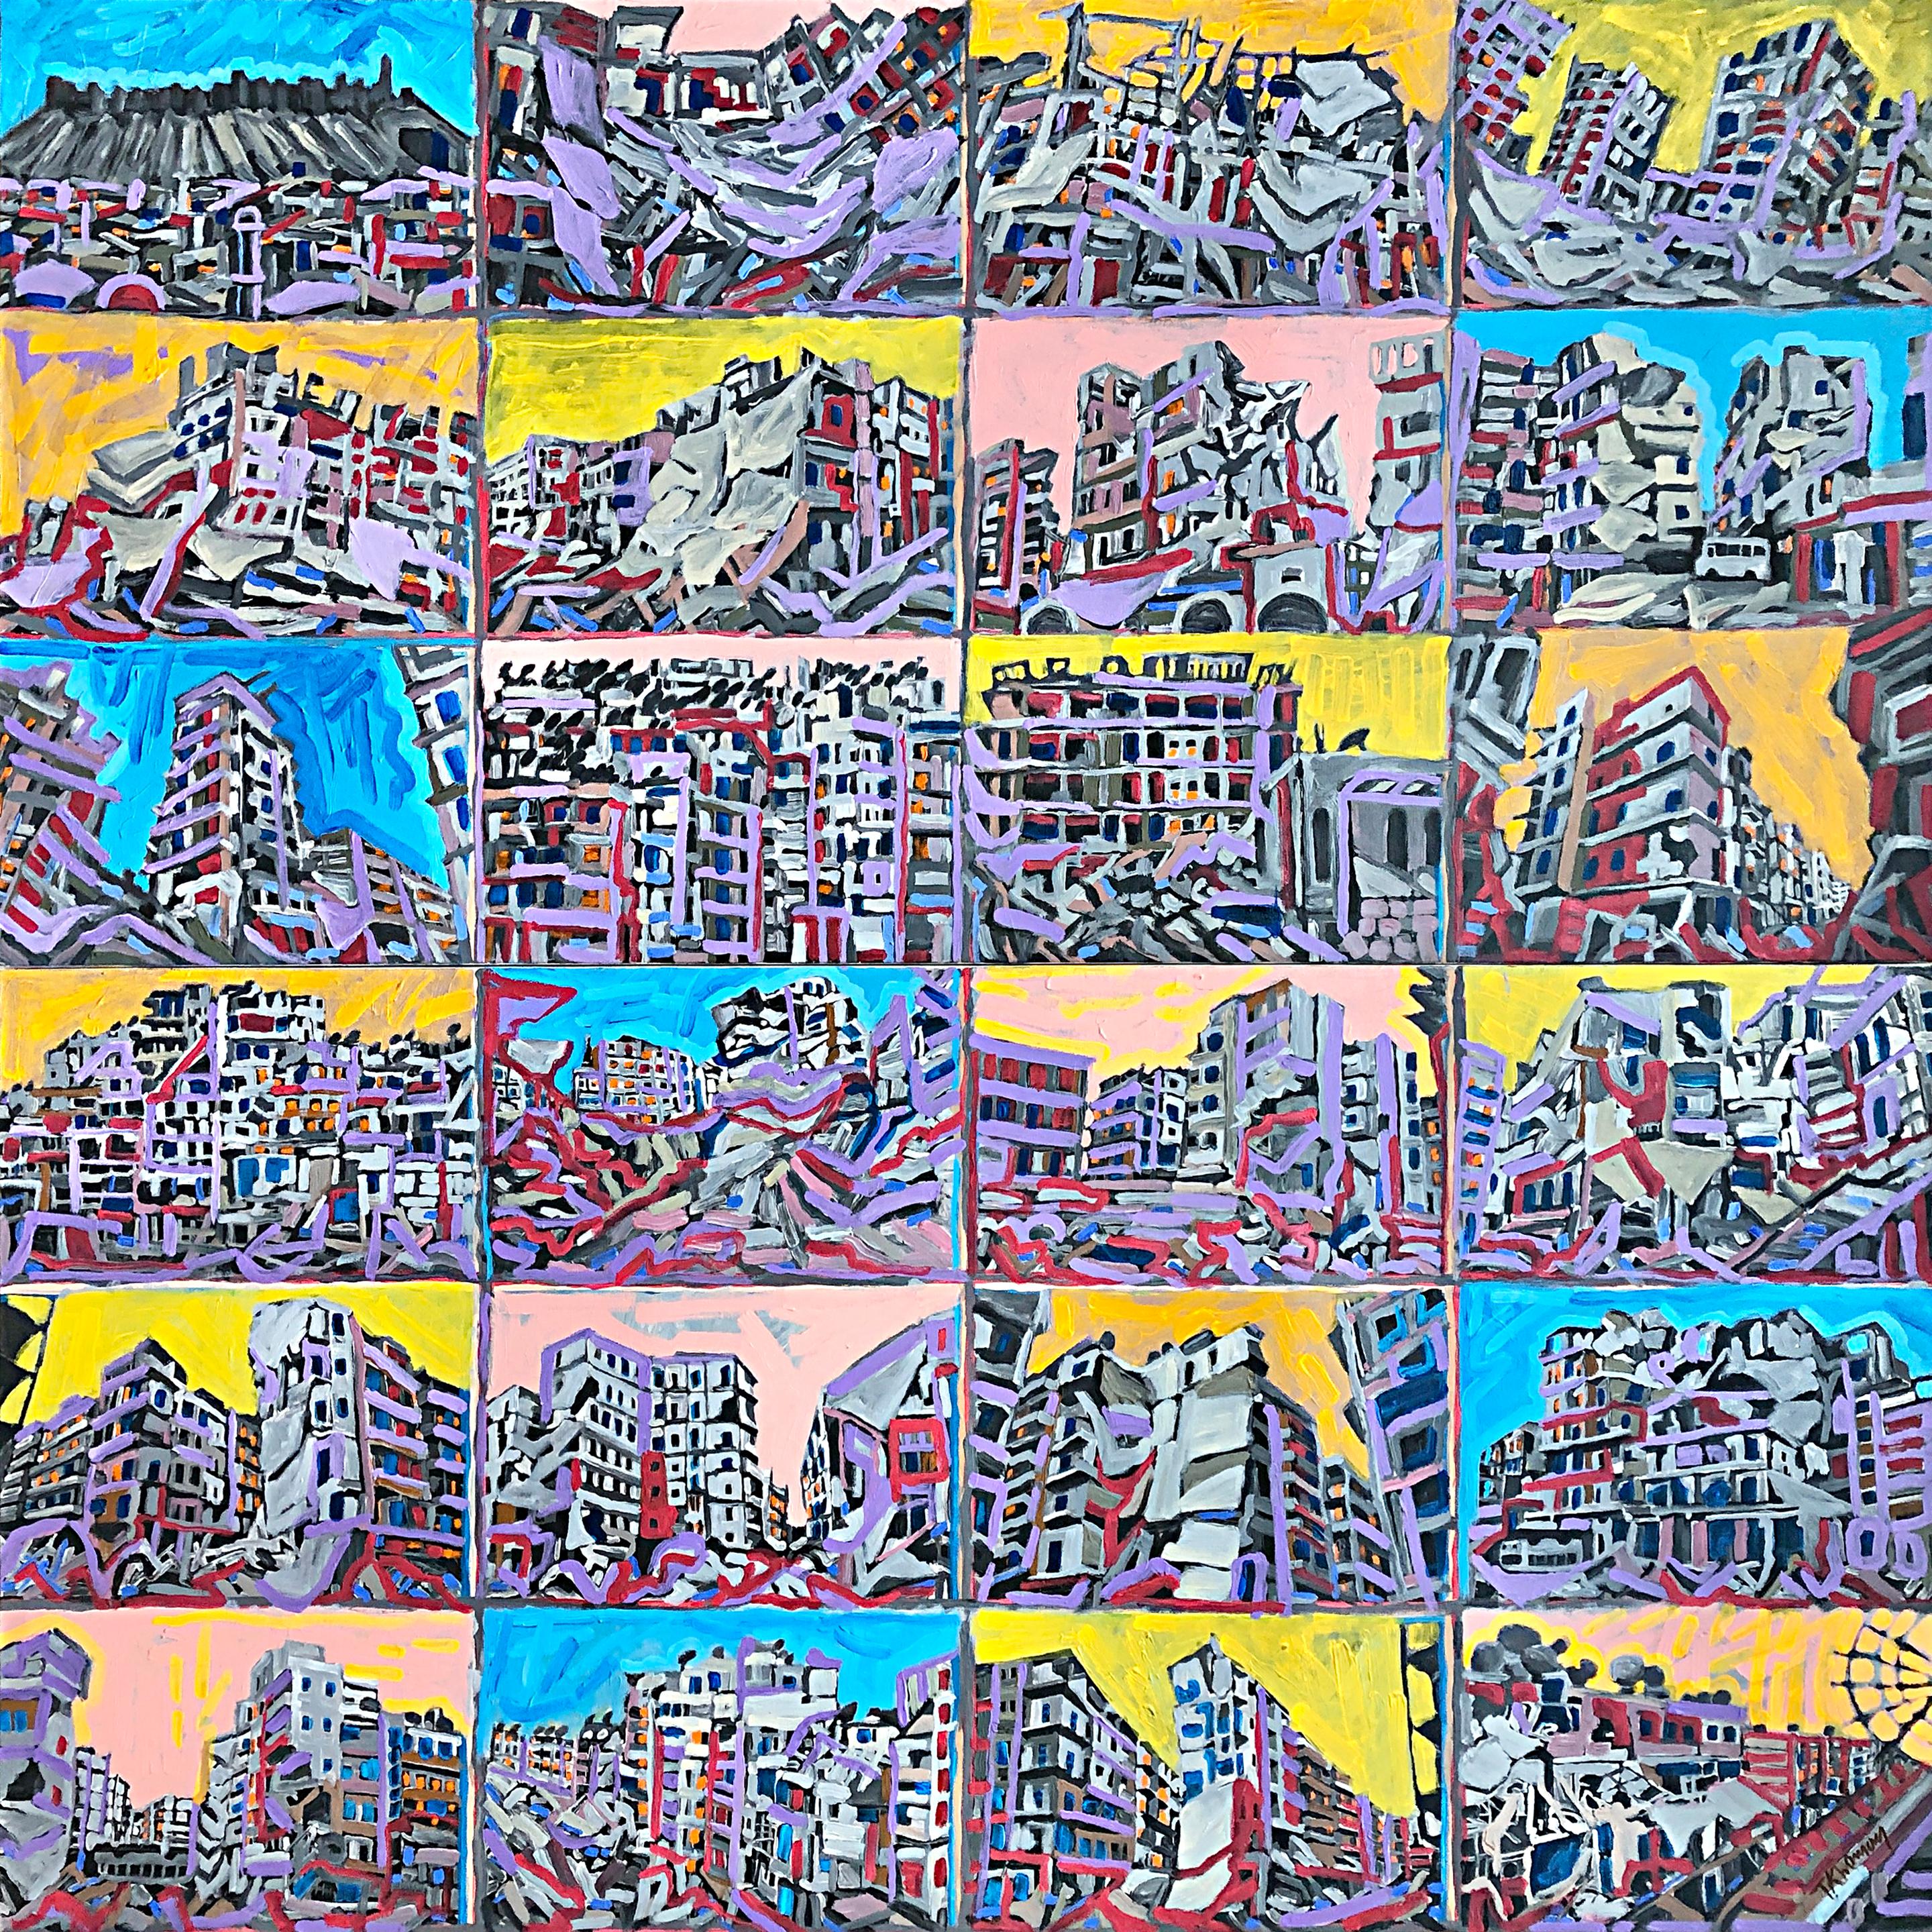 Aleppo to Kyiv Windows to the World - No.2 - Painting by Tony Khawam